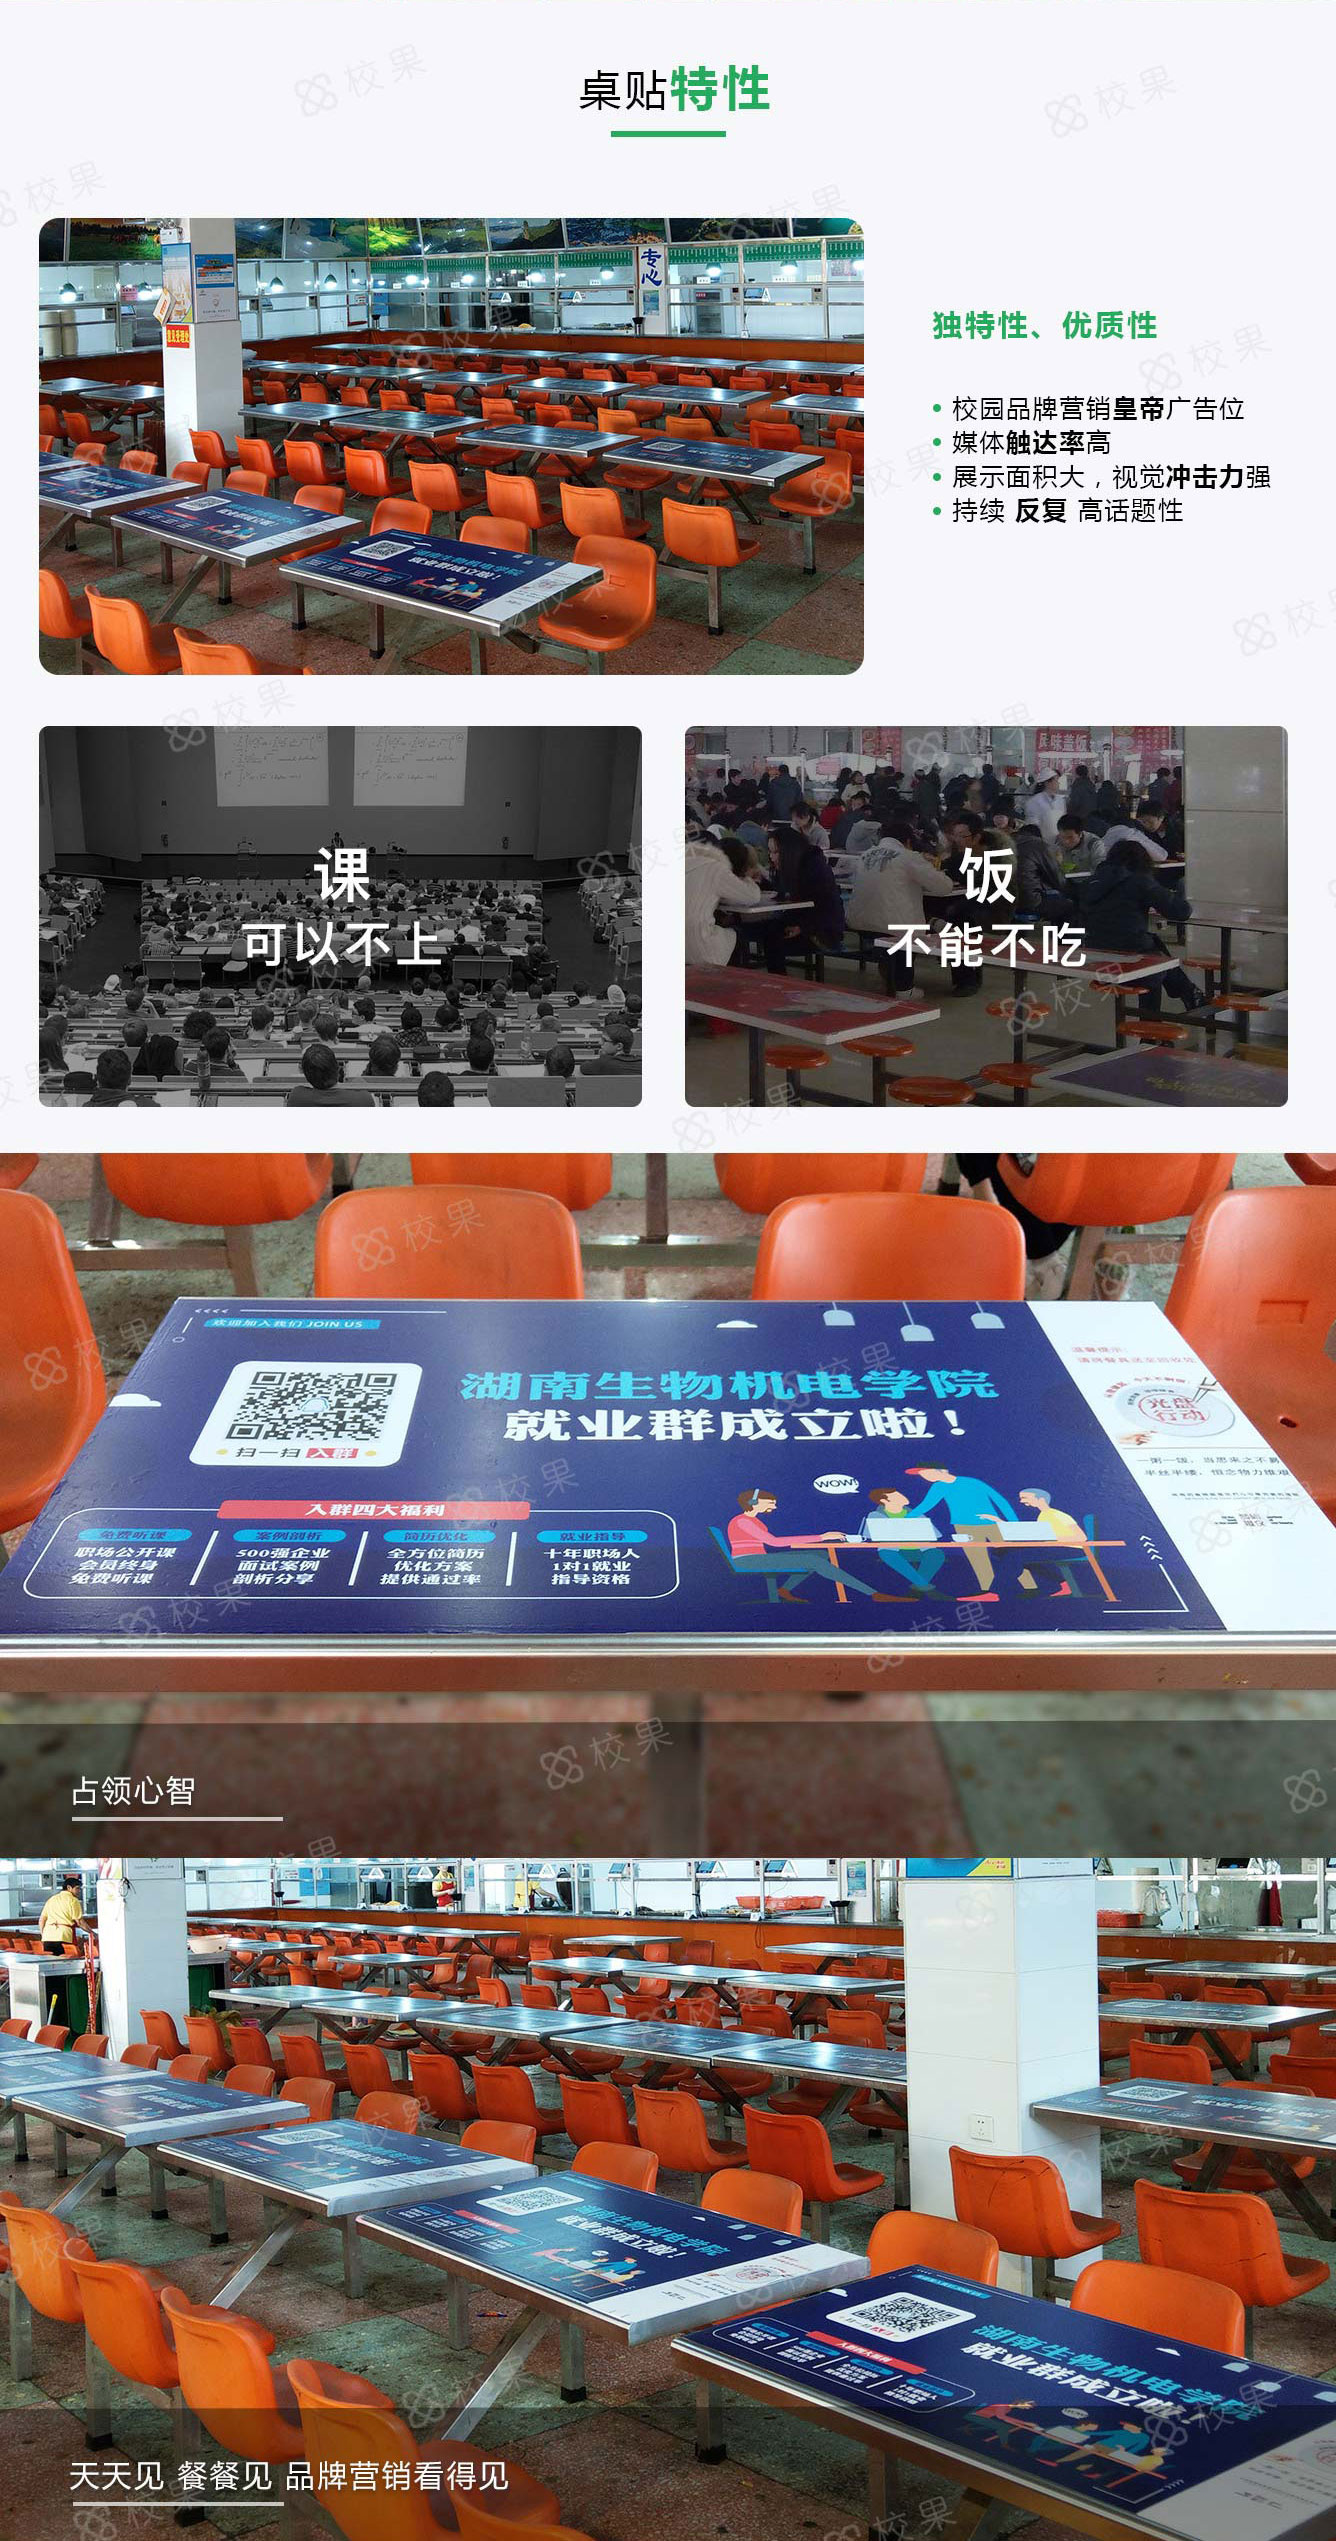 哈尔滨高校桌贴广告特征